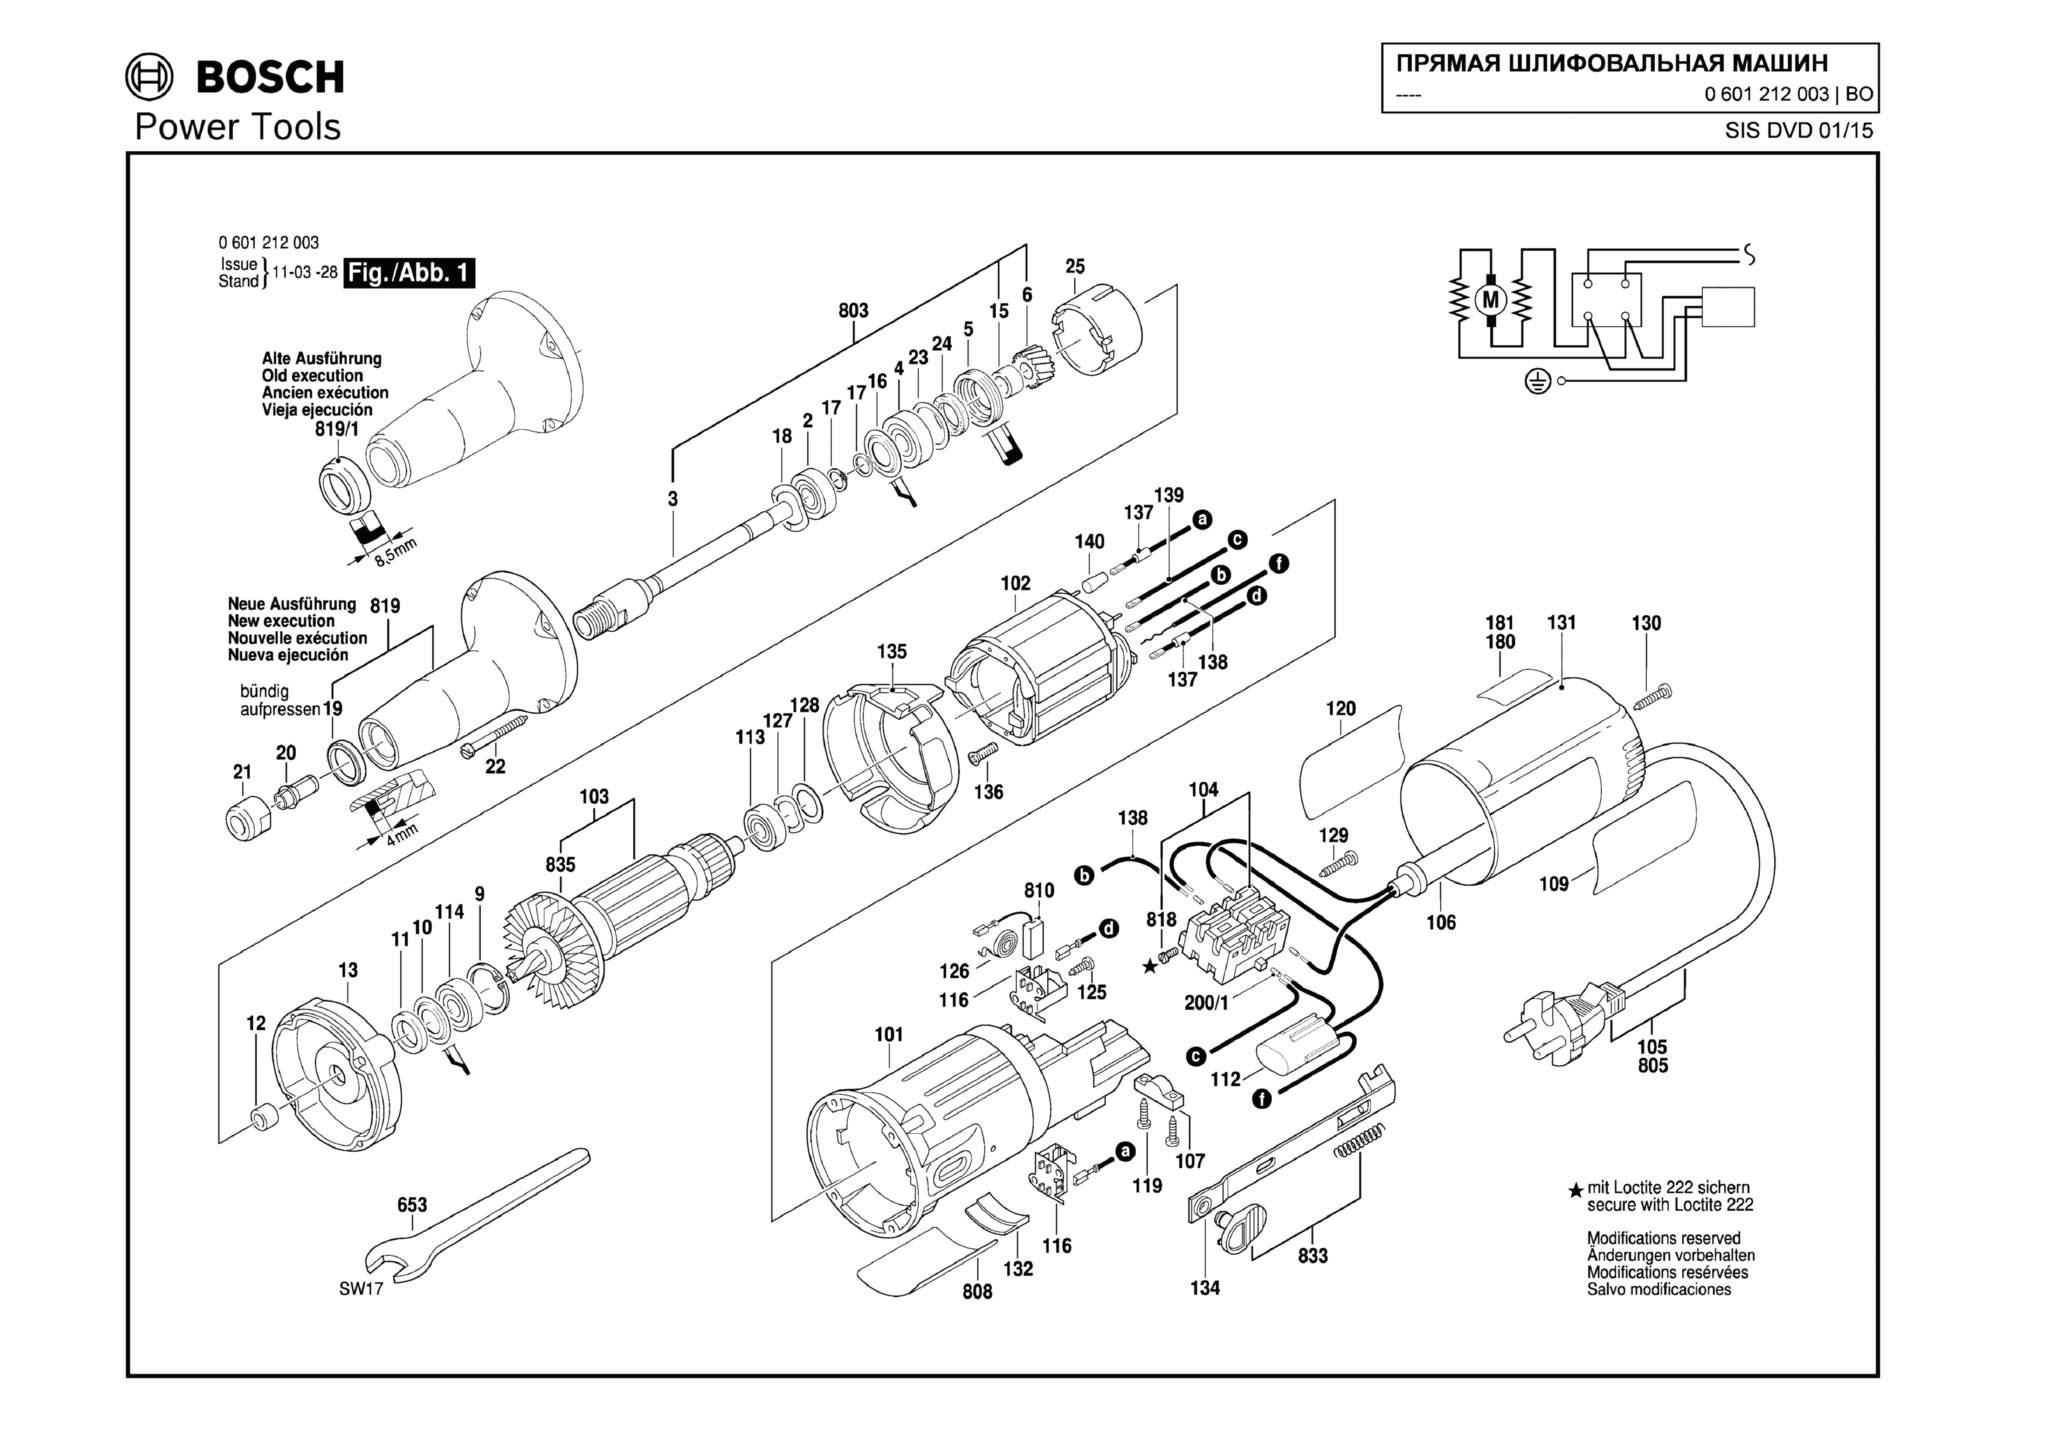 Запчасти, схема и деталировка Bosch (ТИП 0601212003)